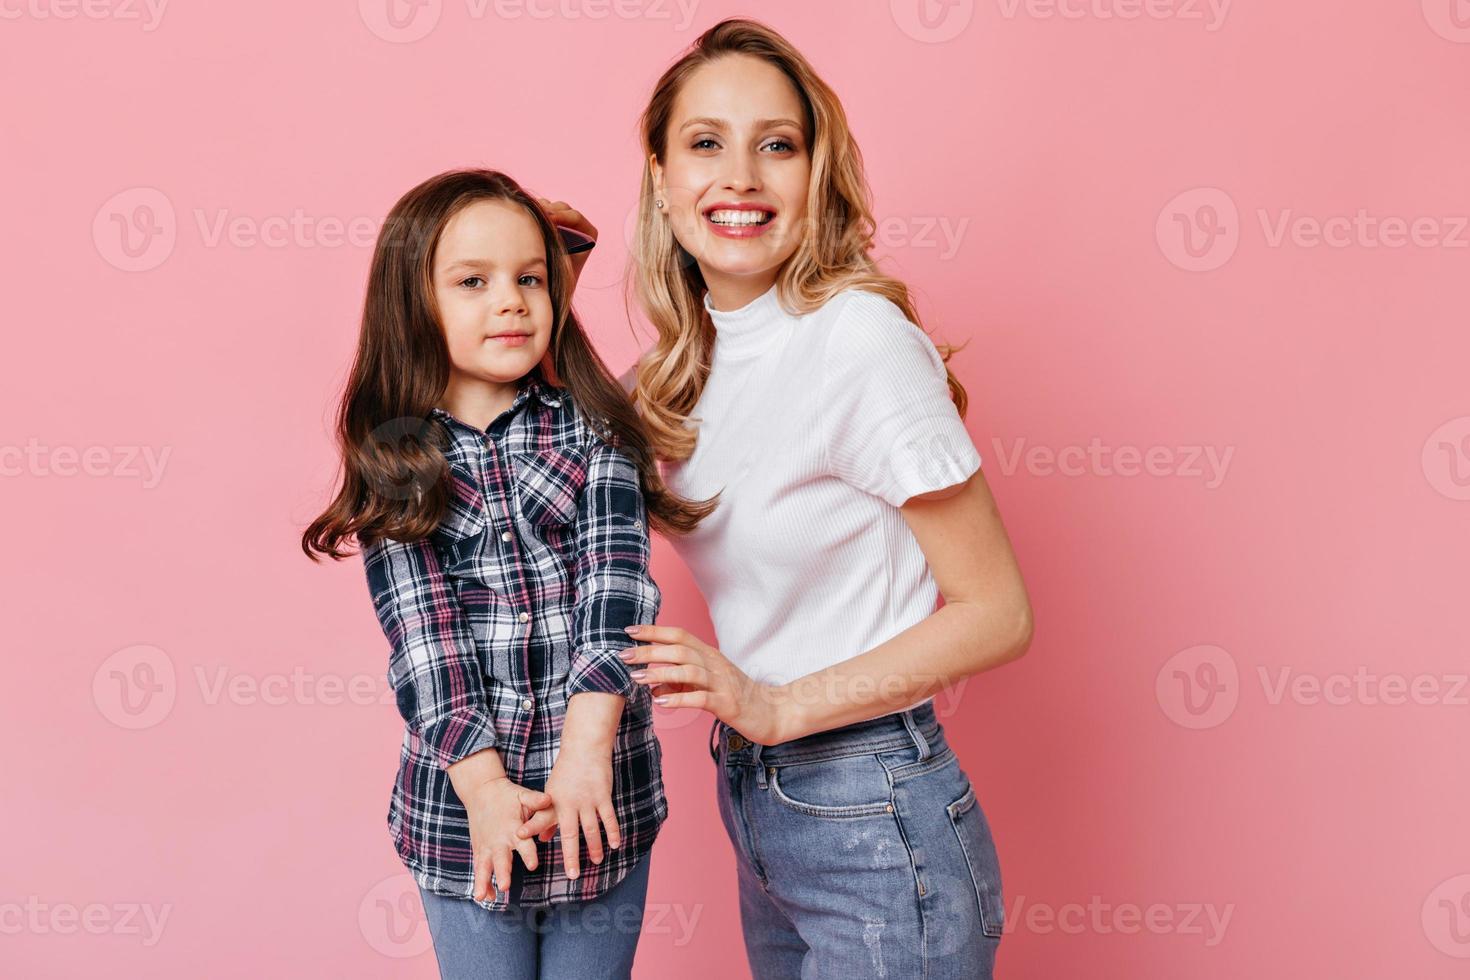 femme positive en t-shirt blanc et jeans brossant les cheveux noirs ondulés de sa fille et posant sur ba rose photo